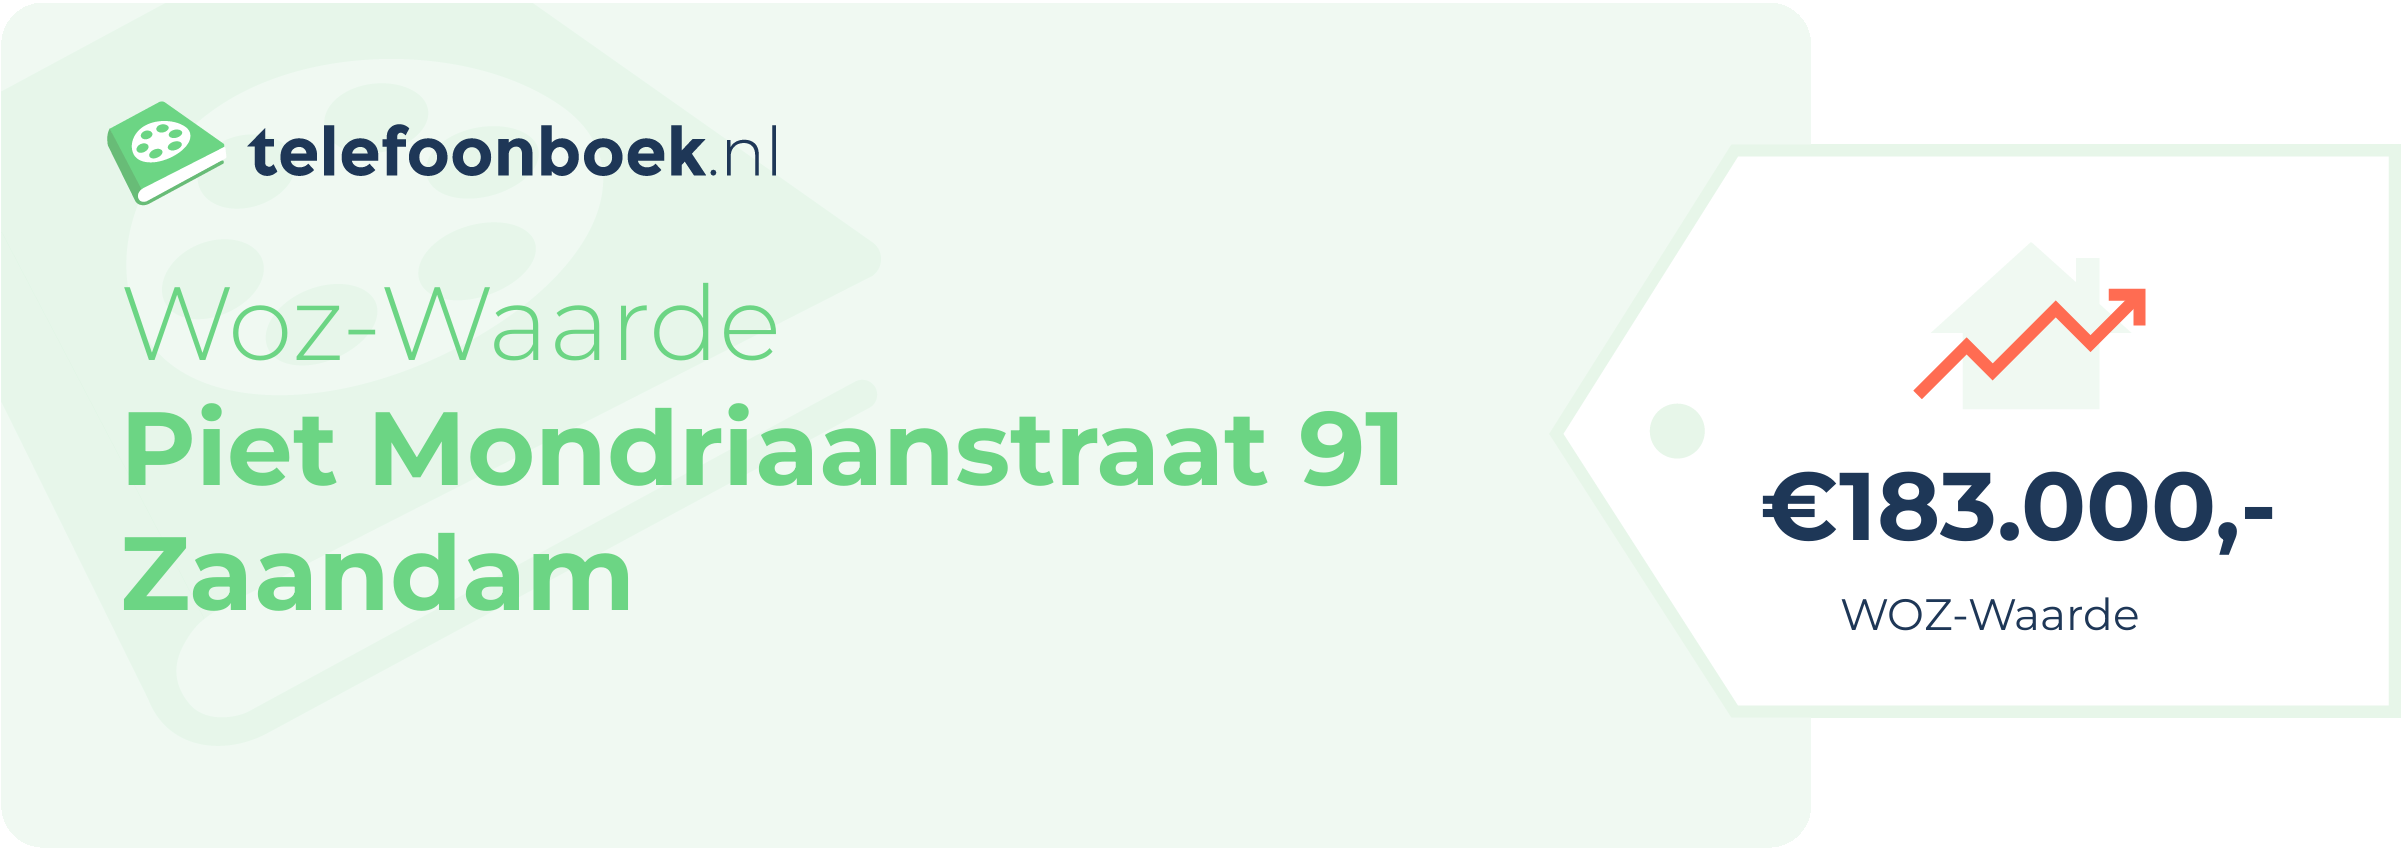 WOZ-waarde Piet Mondriaanstraat 91 Zaandam